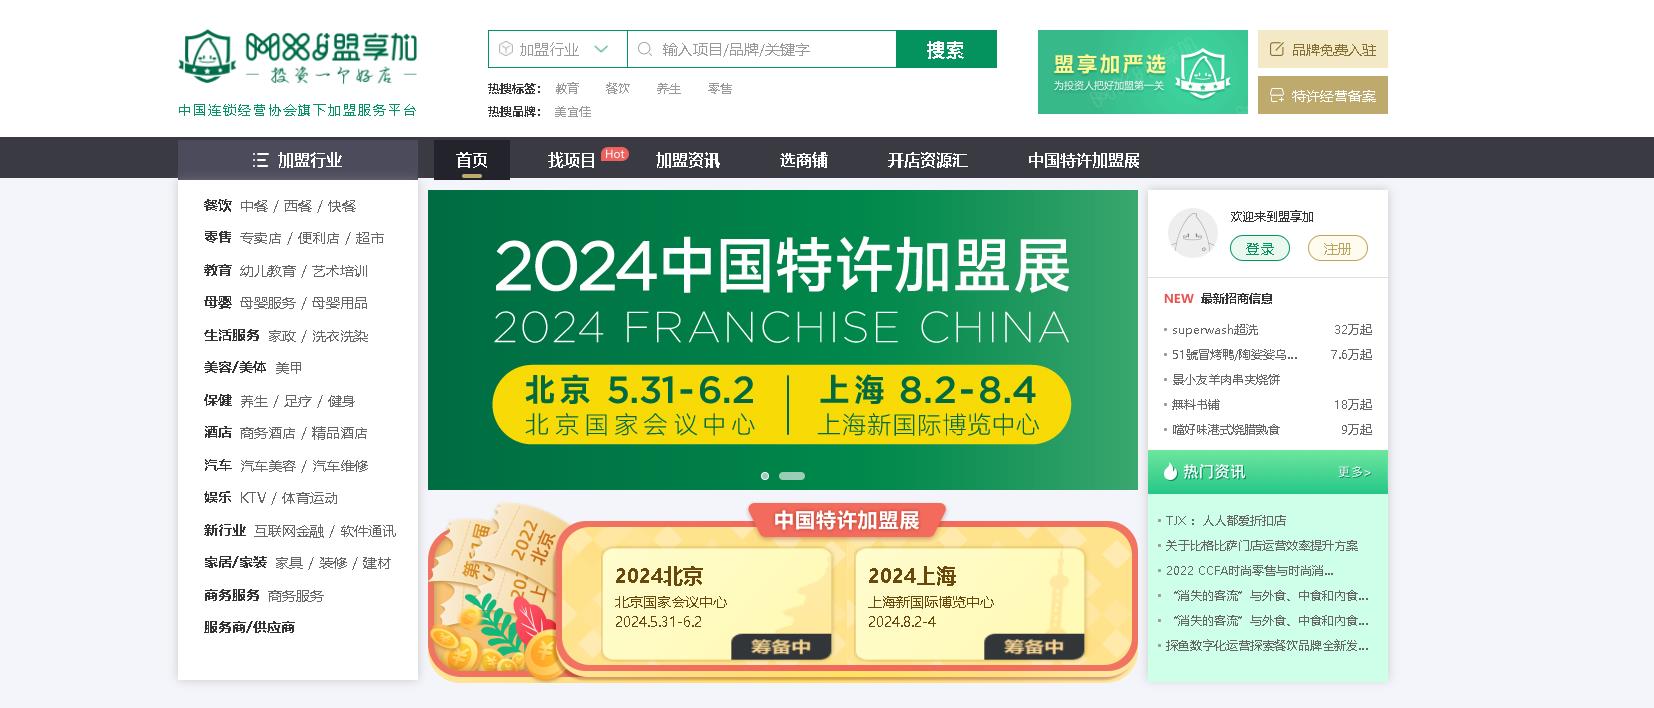 2024中国特许加盟展横幅.jpg